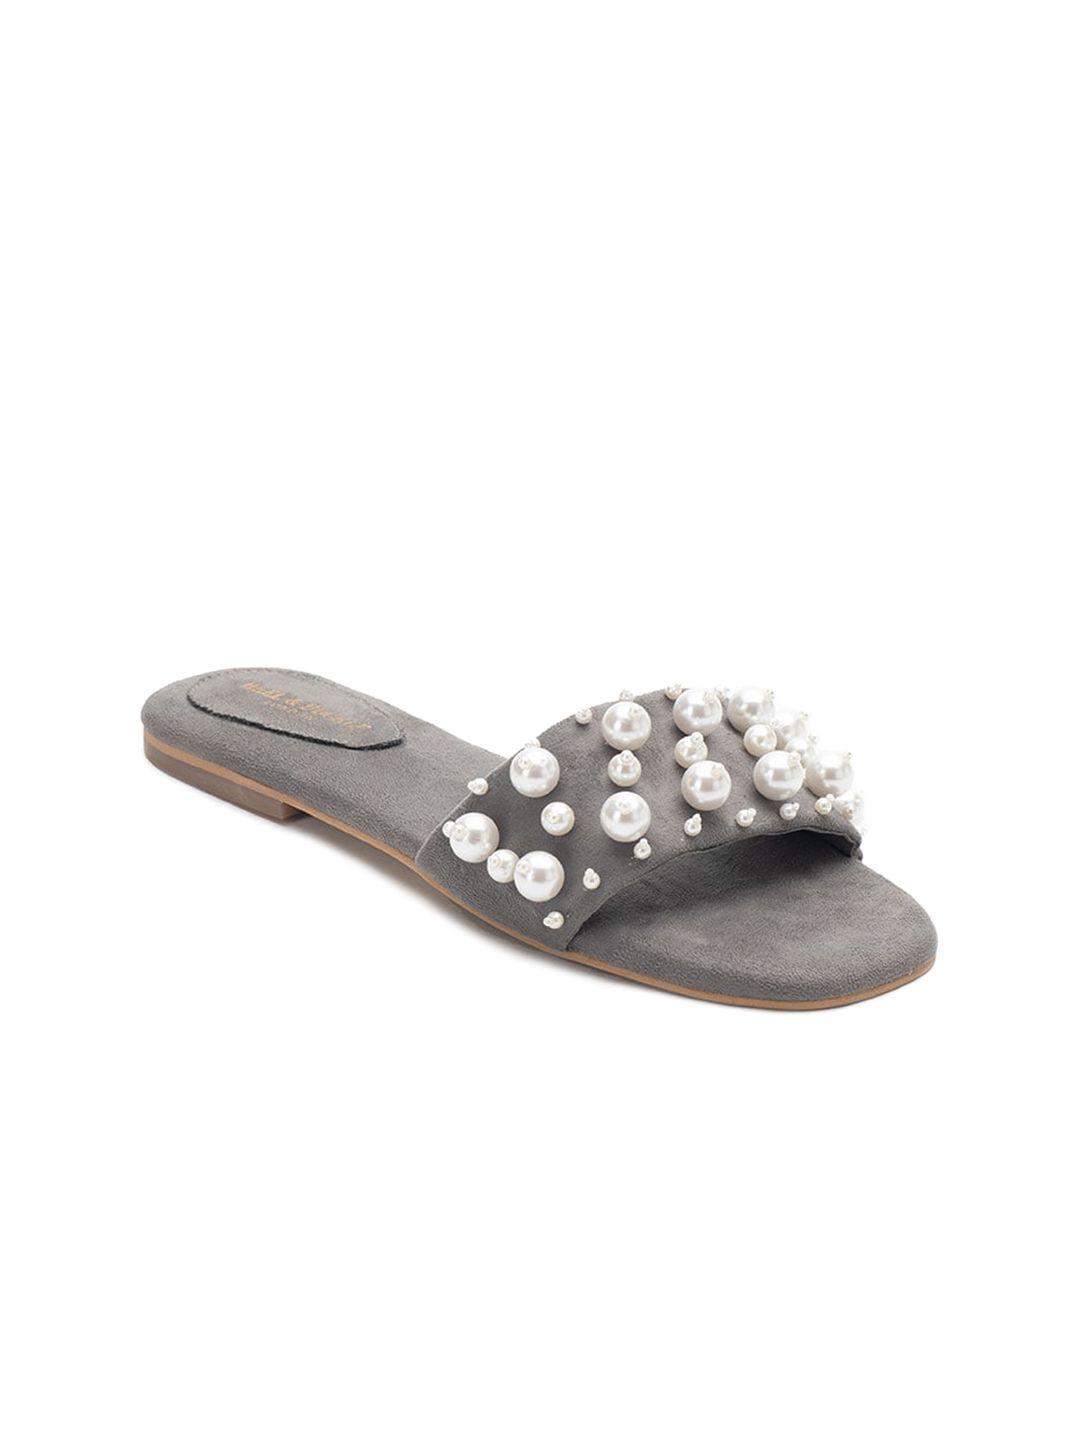 heel & buckle london women grey embellished open toe flats